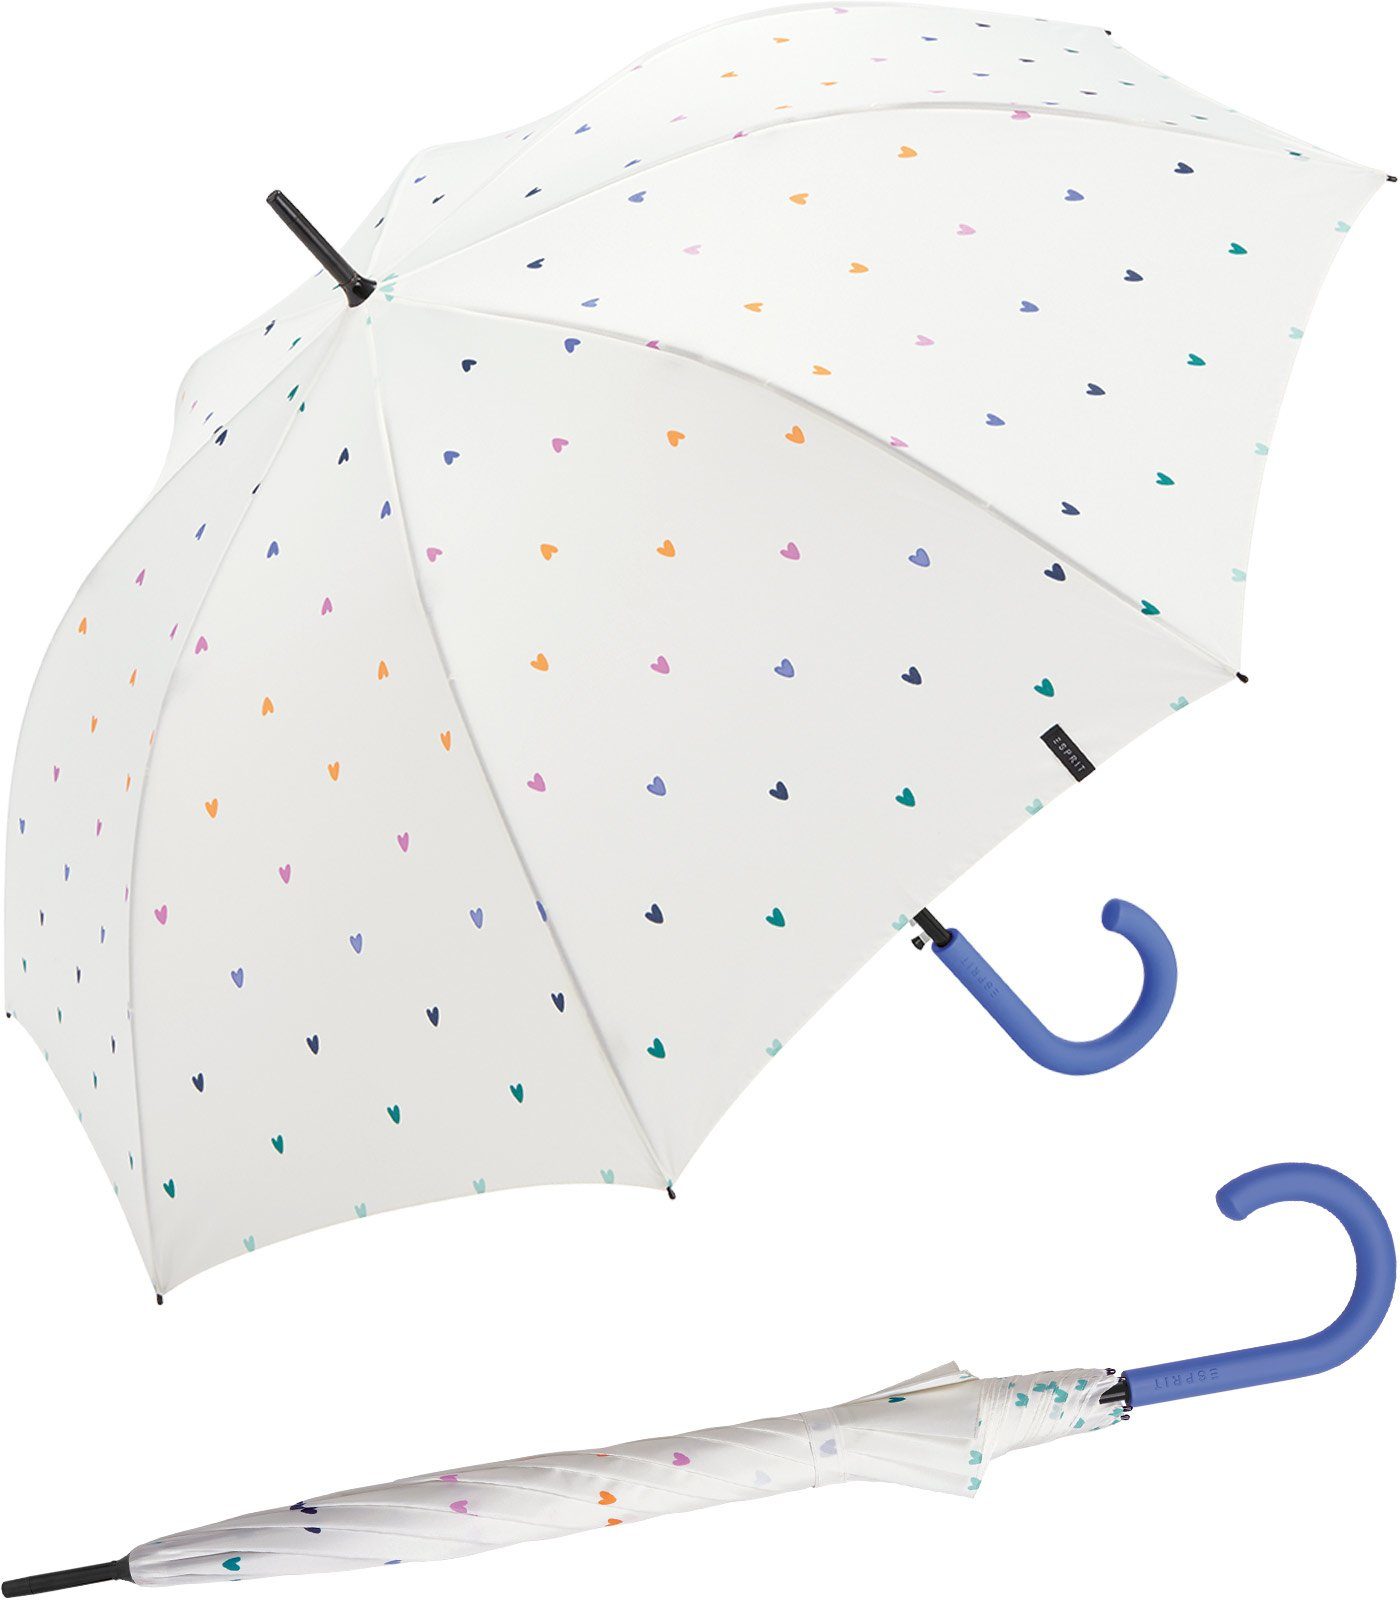 Esprit Langregenschirm Damen Regenschirm mit Automatik Sweatheart, groß und stabil, mit vielen kleinen, bunten Herzen weiß